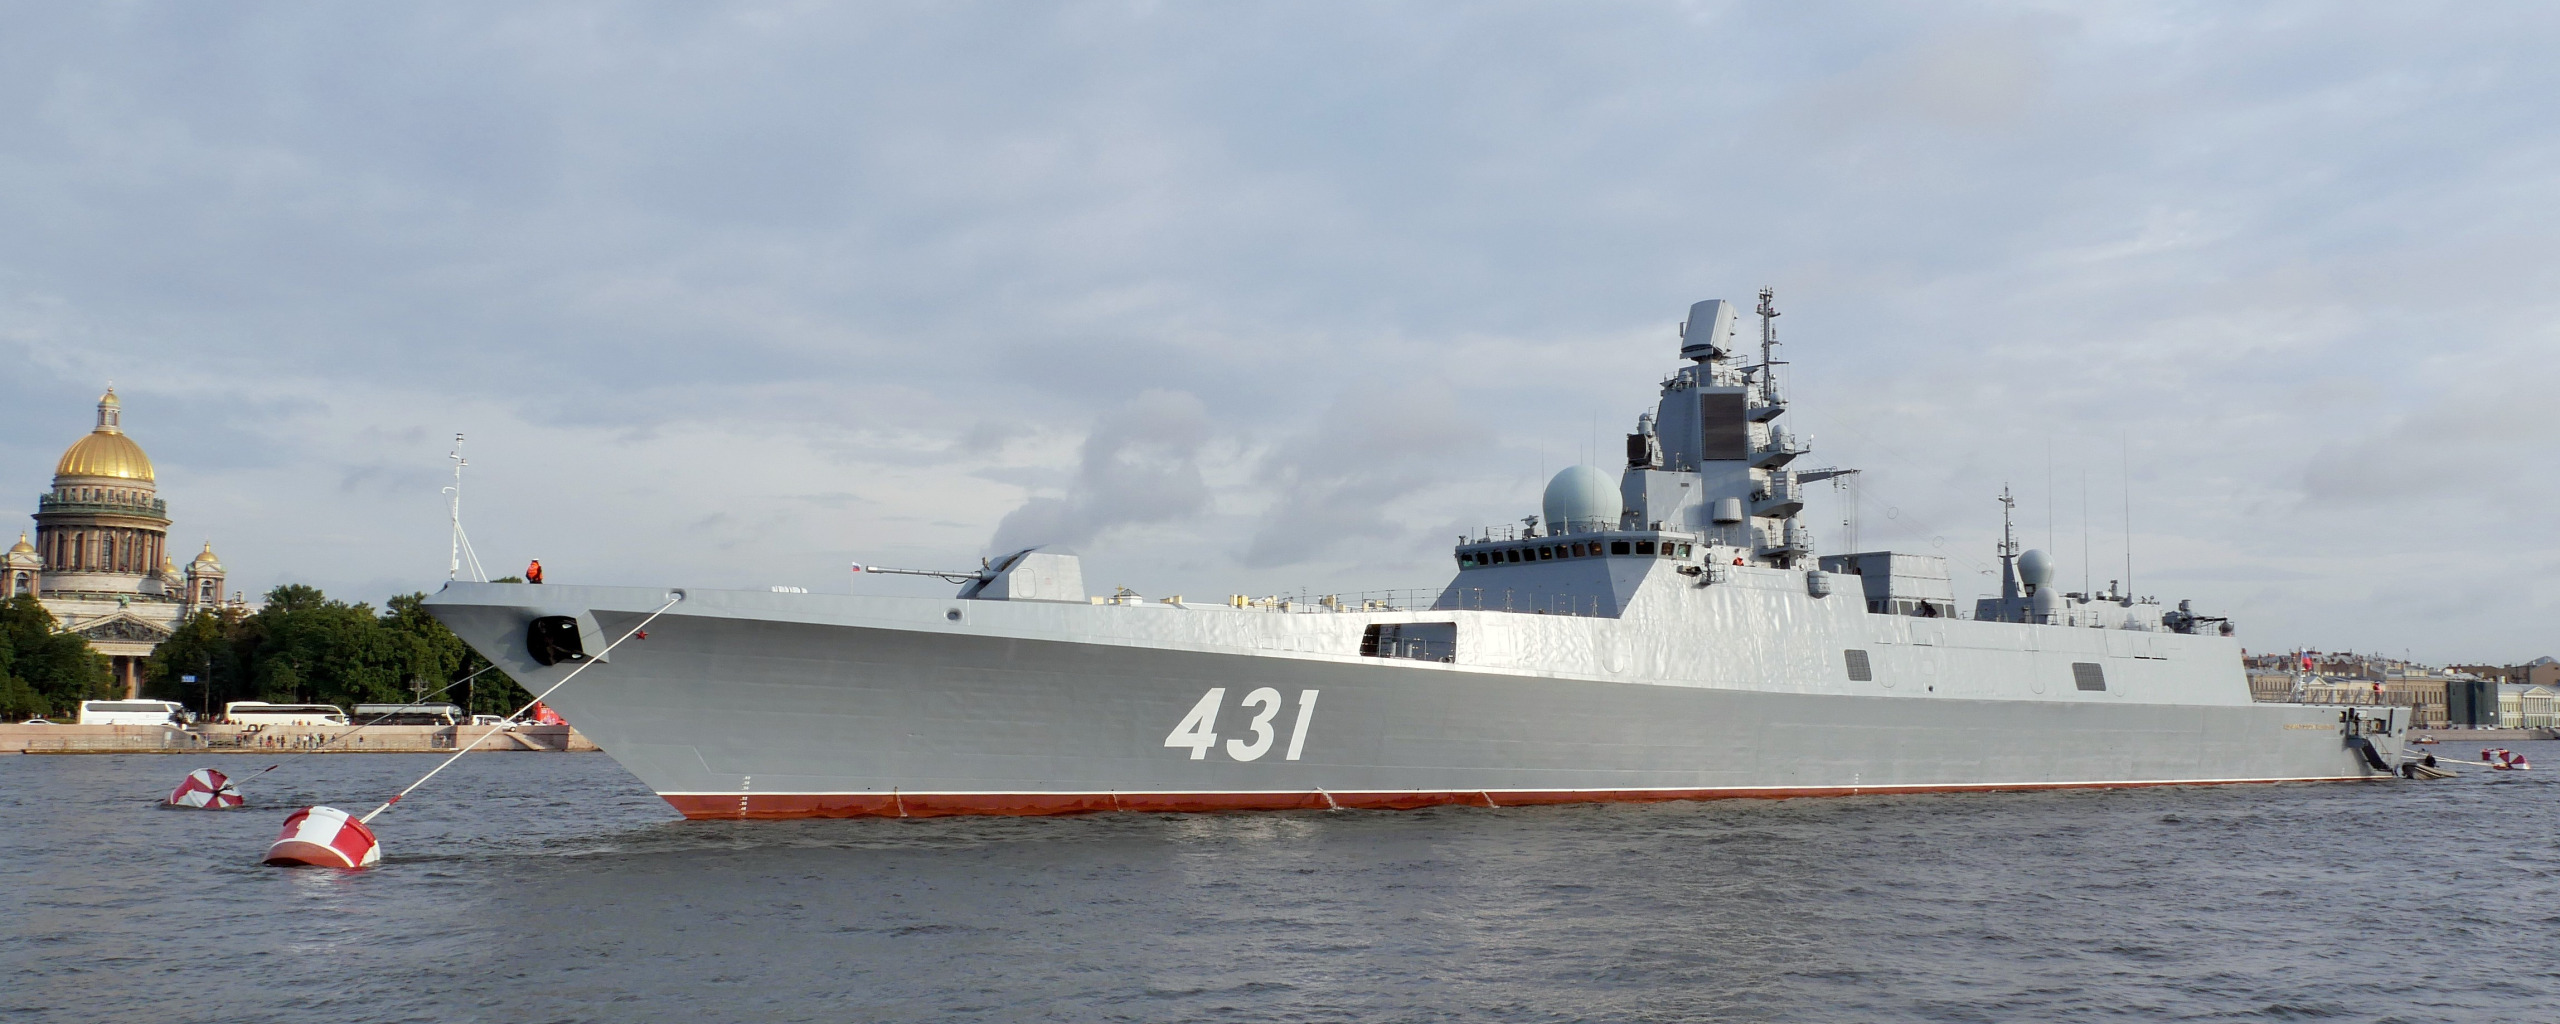 Фрегат адмирал касатонов